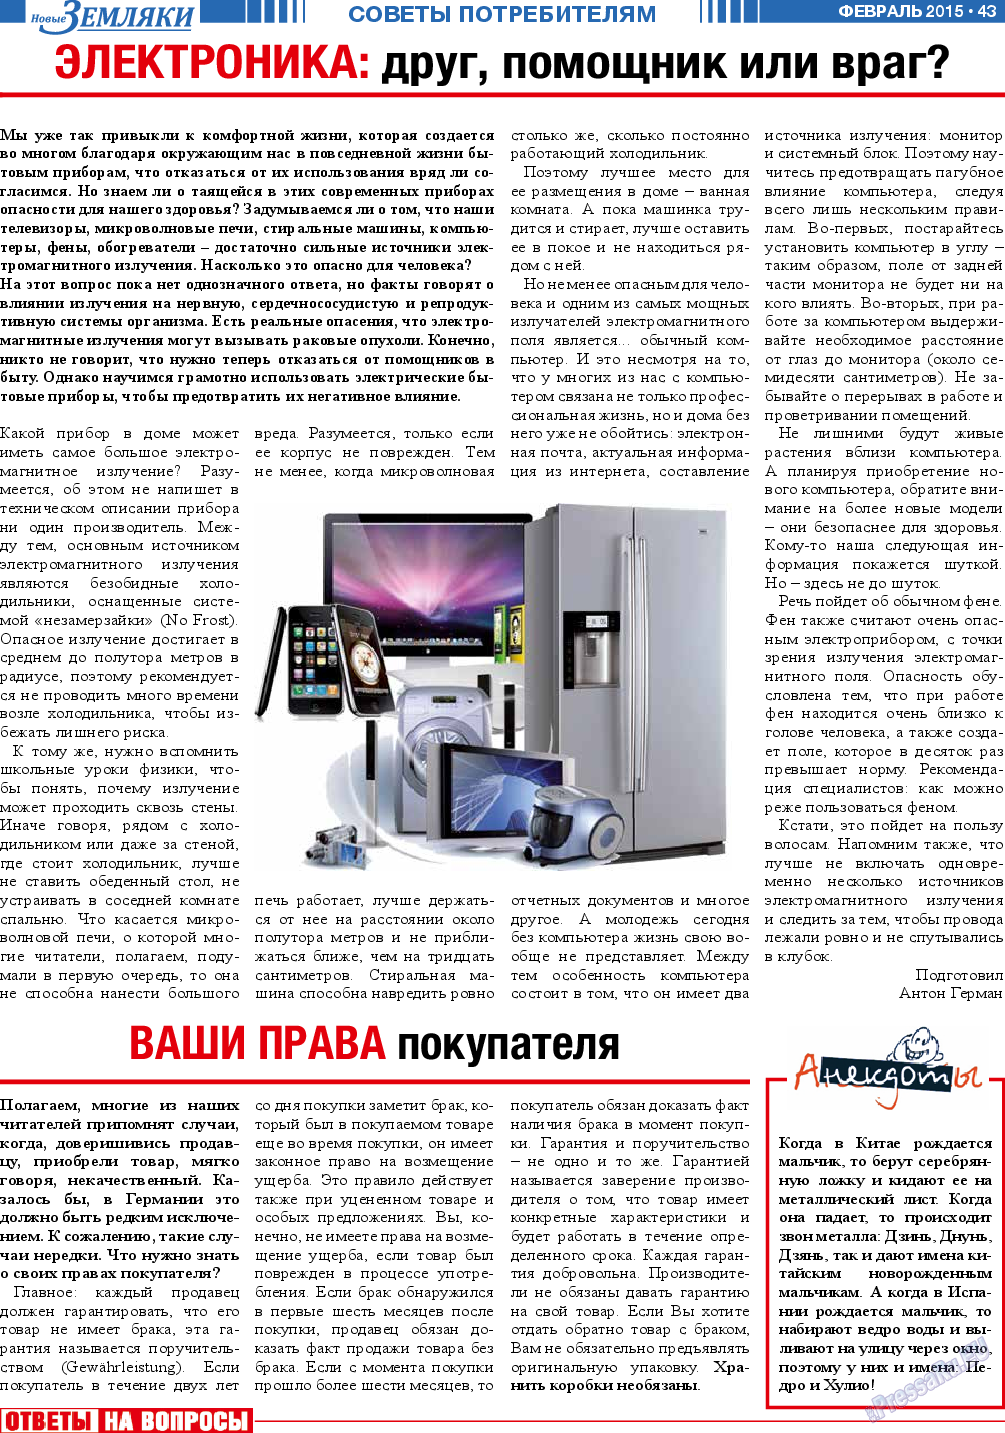 Новые Земляки, газета. 2015 №2 стр.43